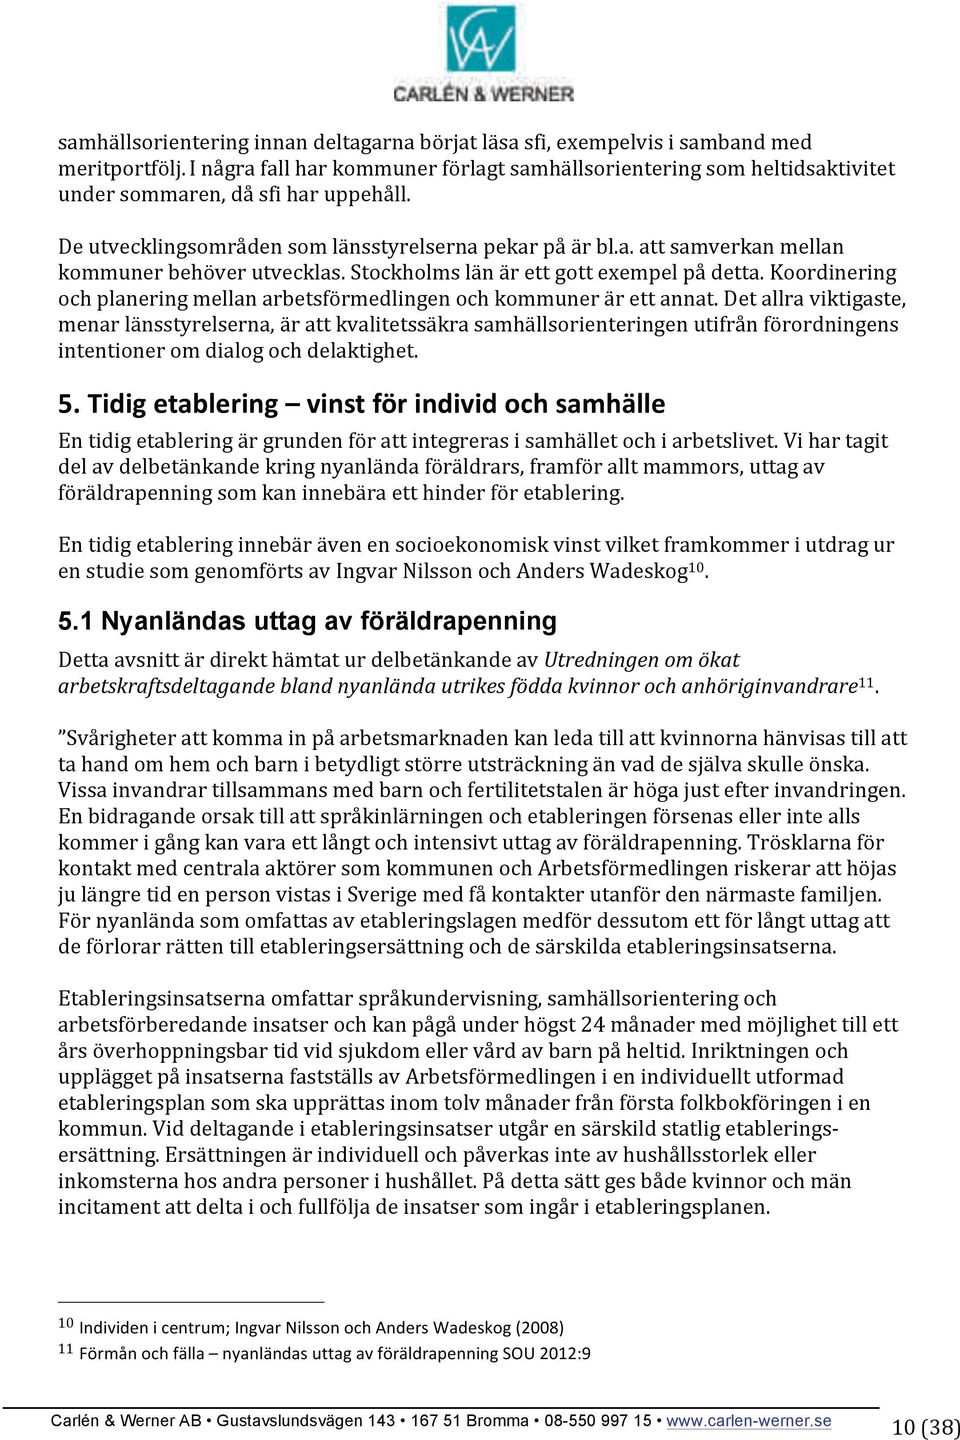 Stockholms län är ett gott exempel på detta. Koordinering och planering mellan arbetsförmedlingen och kommuner är ett annat.